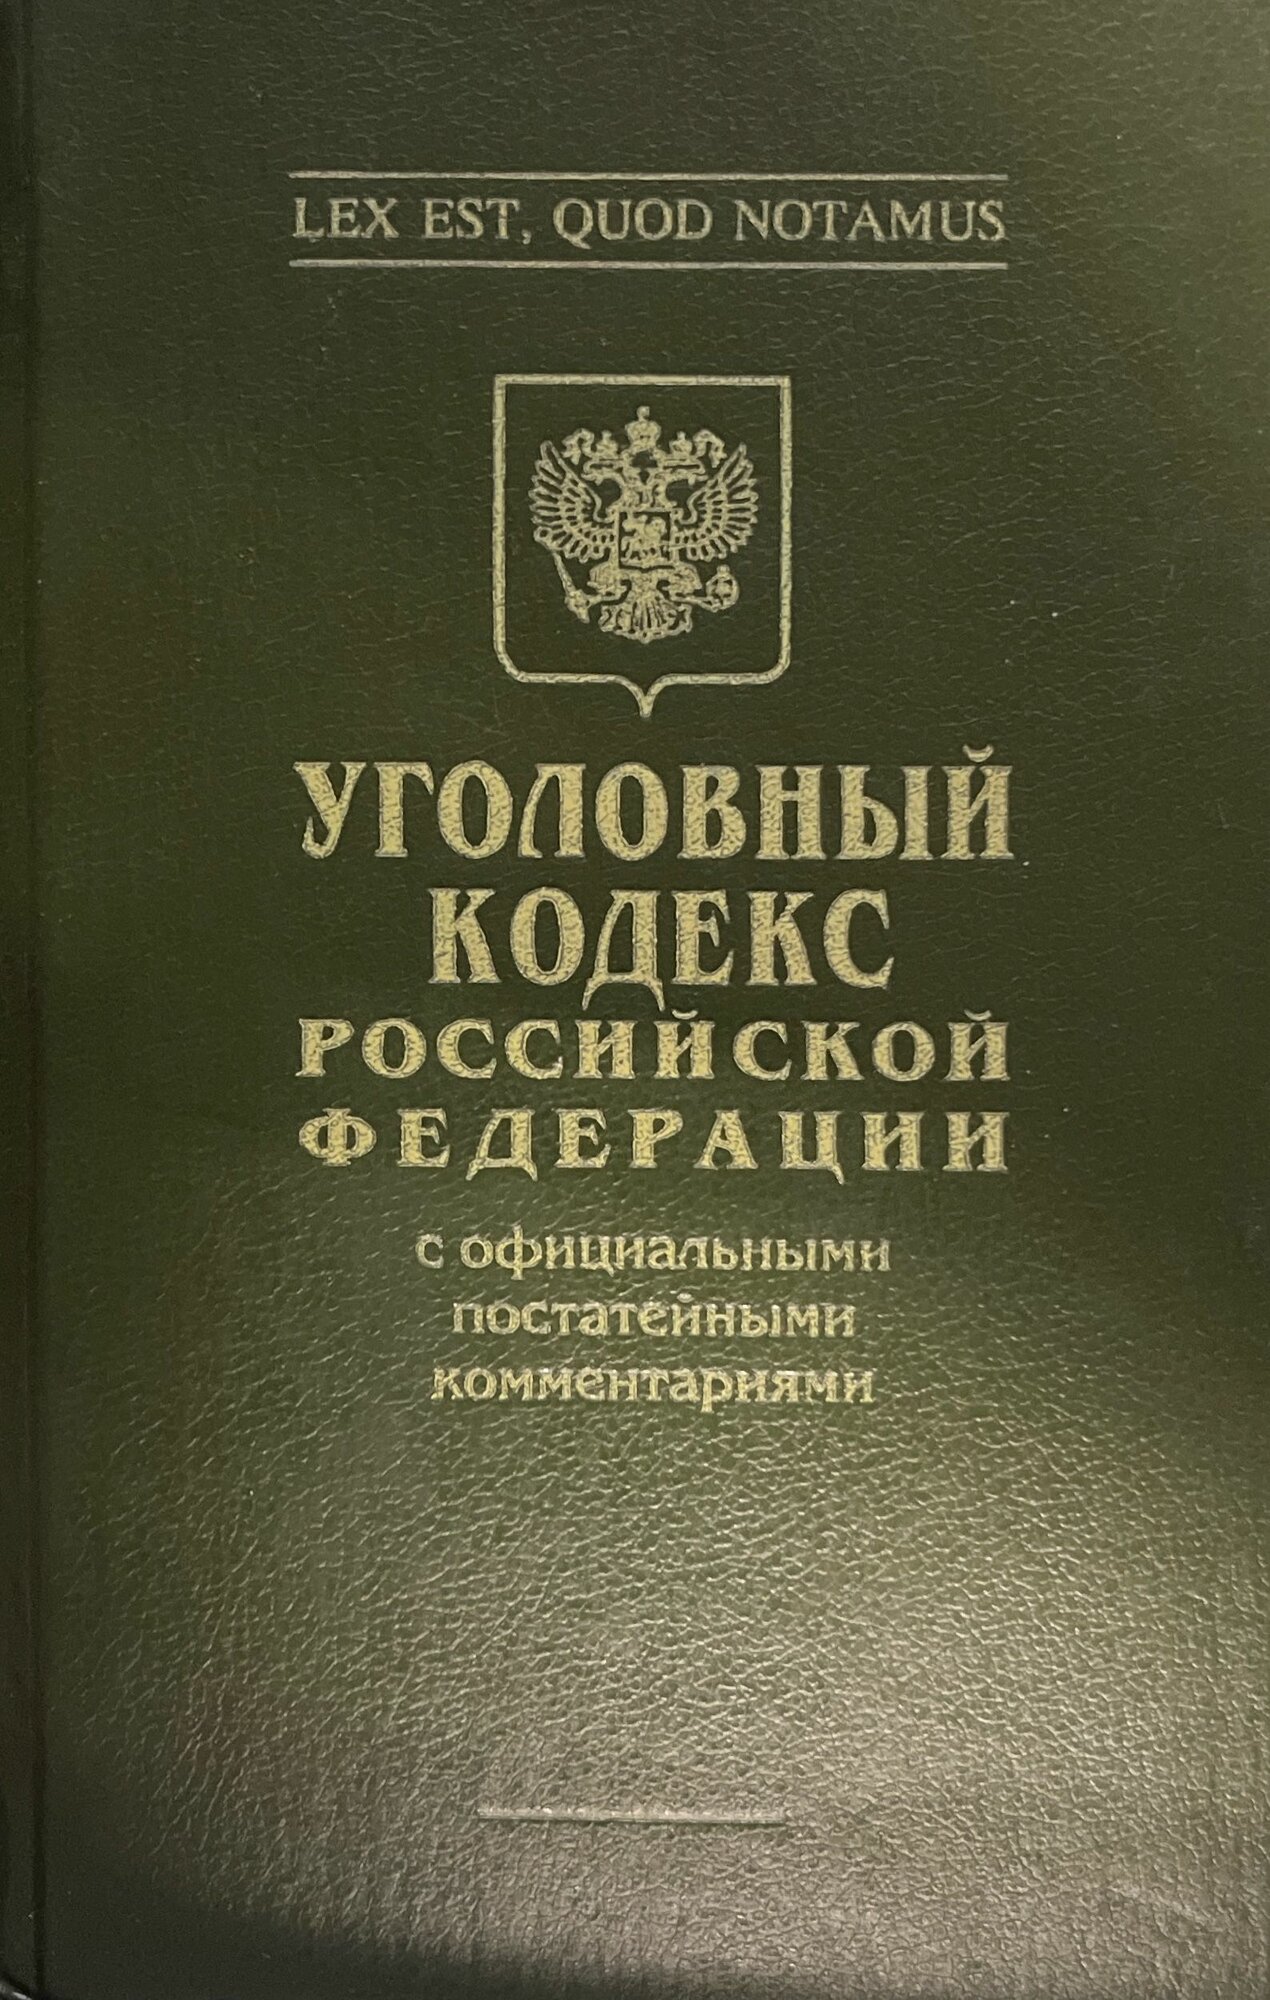 Уголовный кодекс Российской Федерации 1994 г.